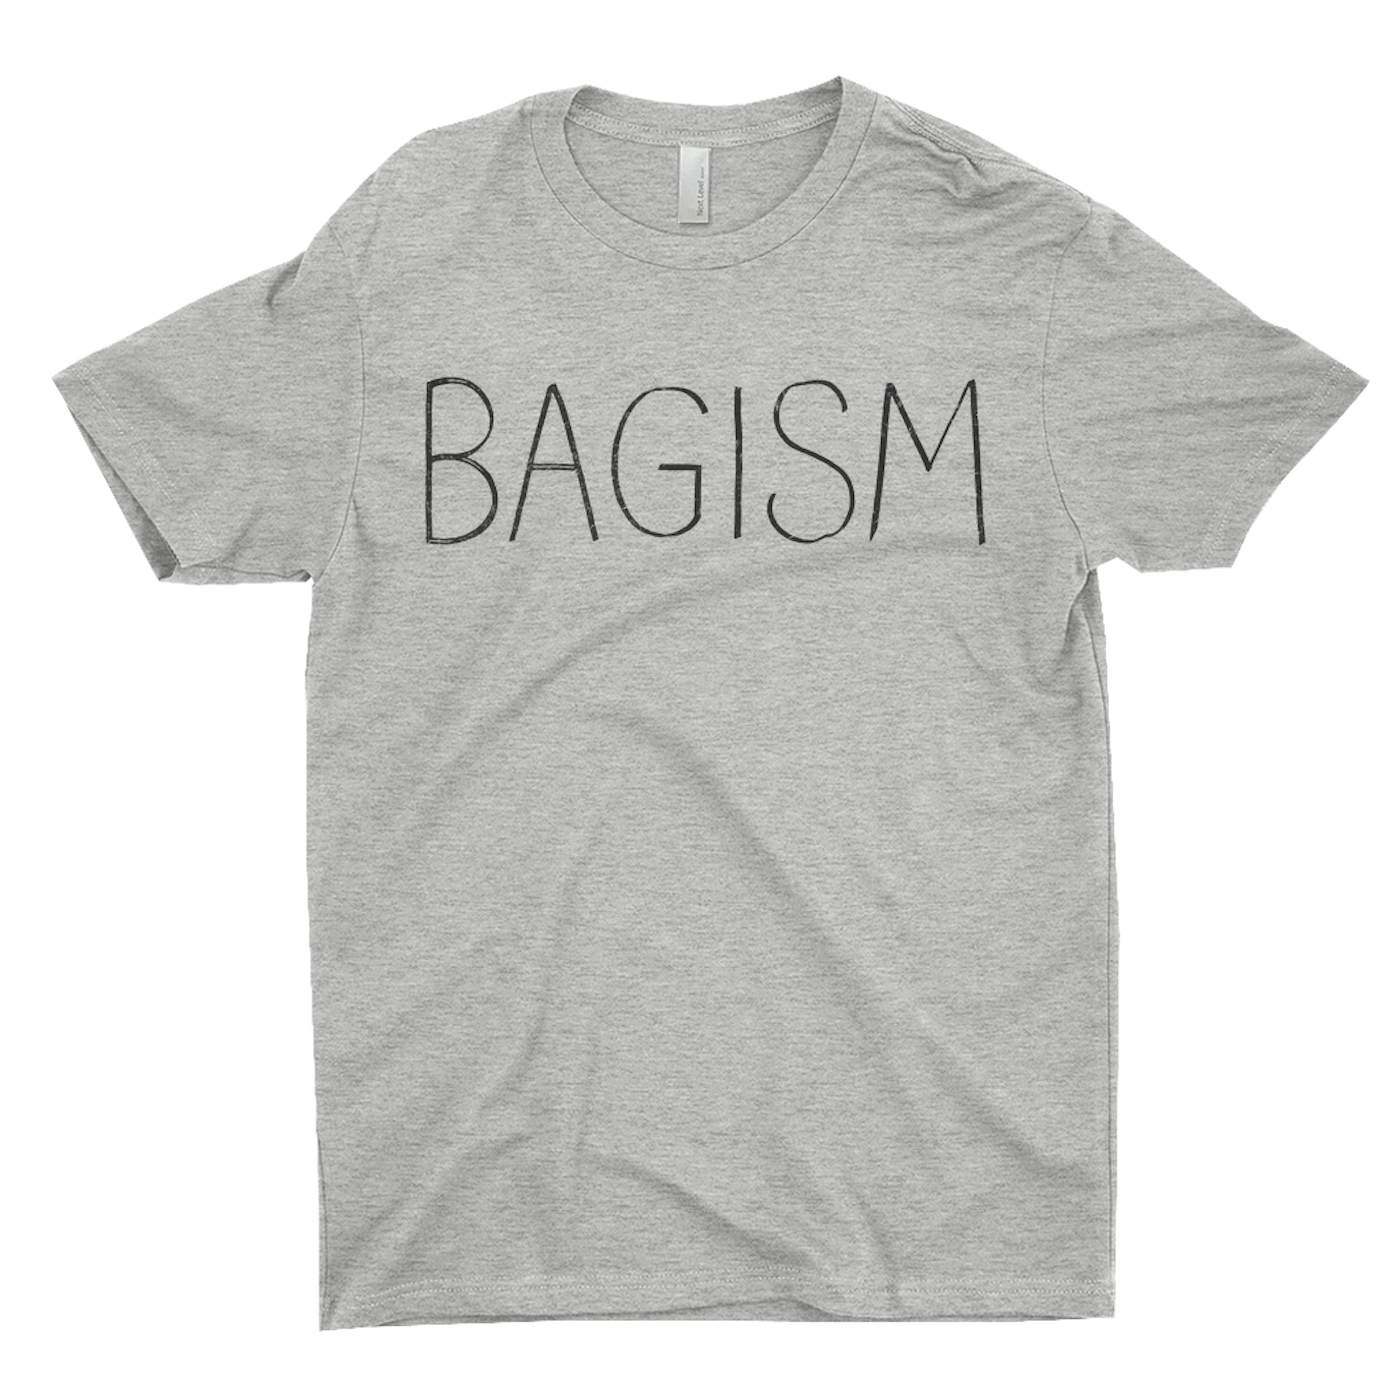 John Lennon T-Shirt | Bagism Design Worn By John Lennon Shirt